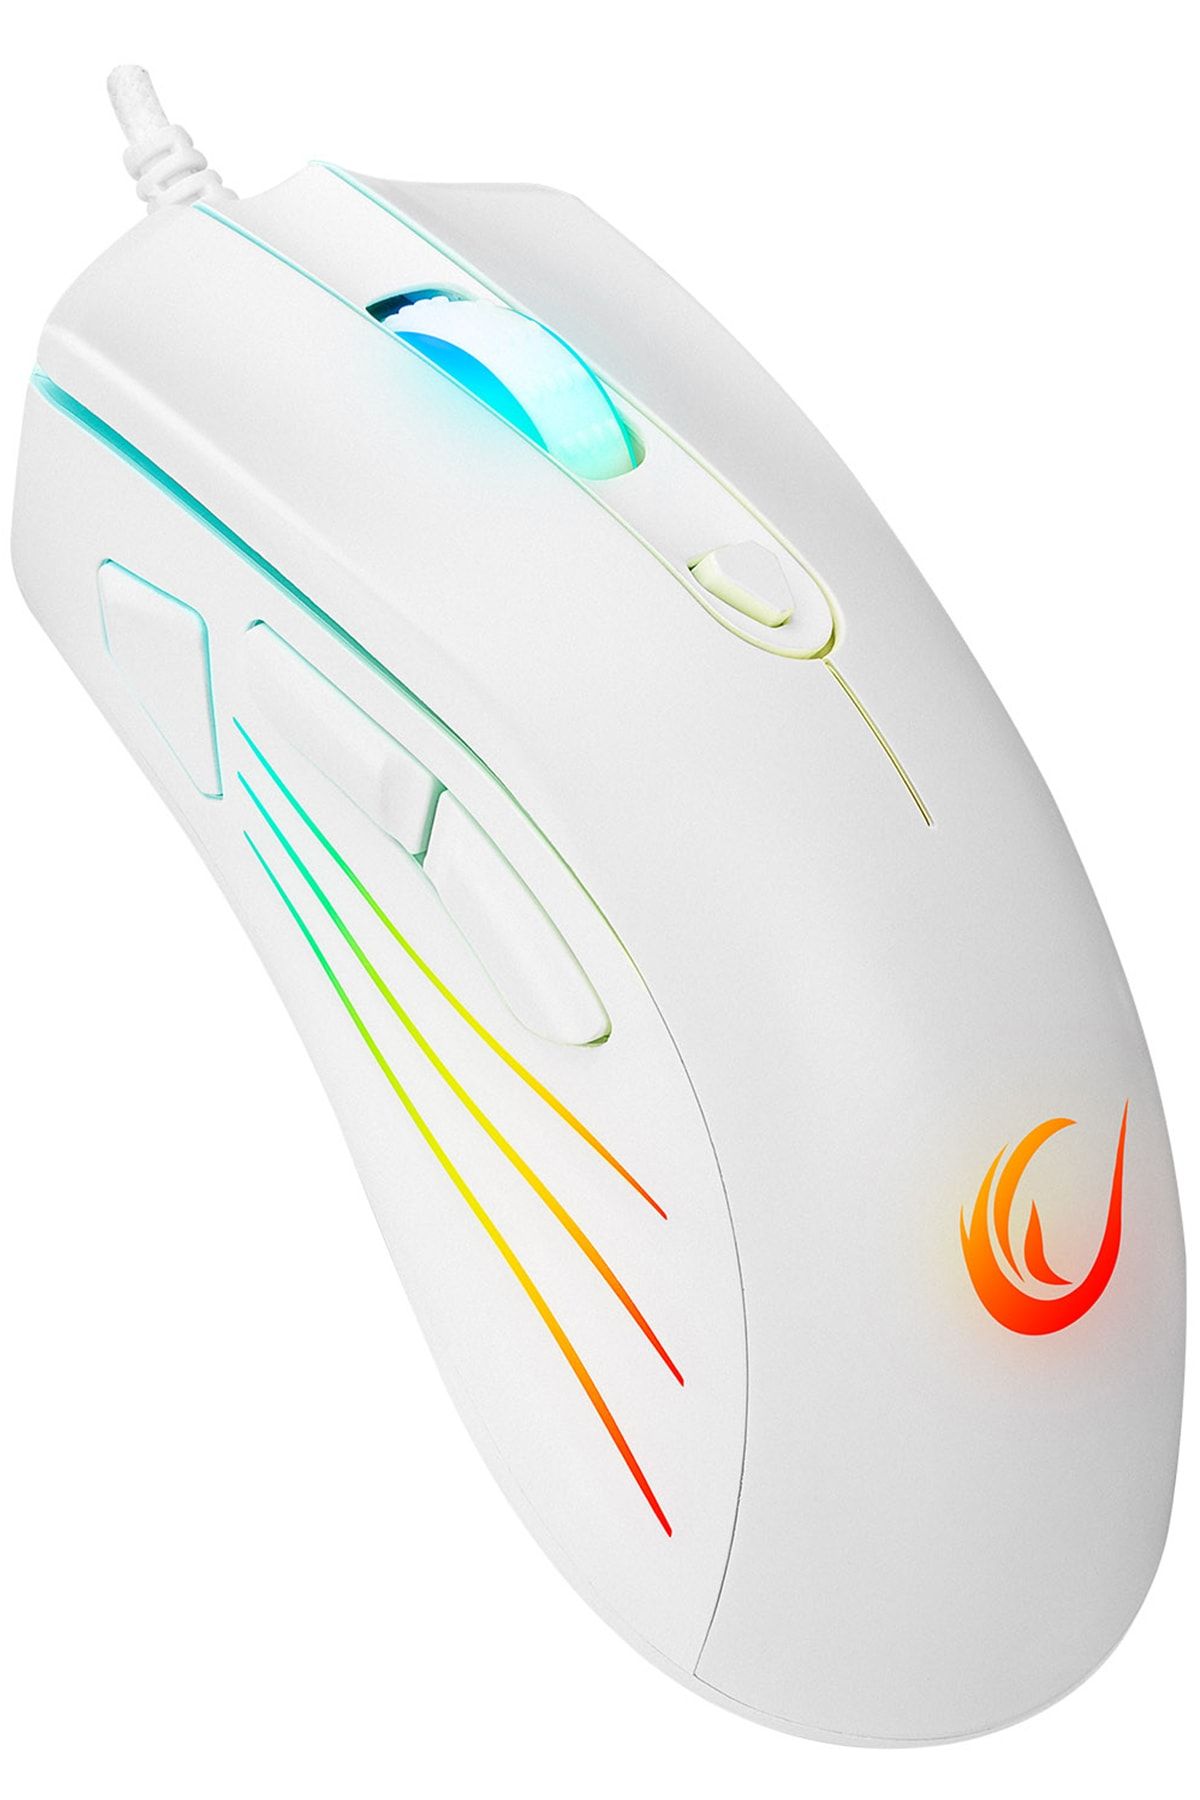 Rampage Marka: Smx-r33 Lımbo 6400 Dpi Rgb Oyuncu Mouse Beyaz Makrolu (white) Kategori: Mou